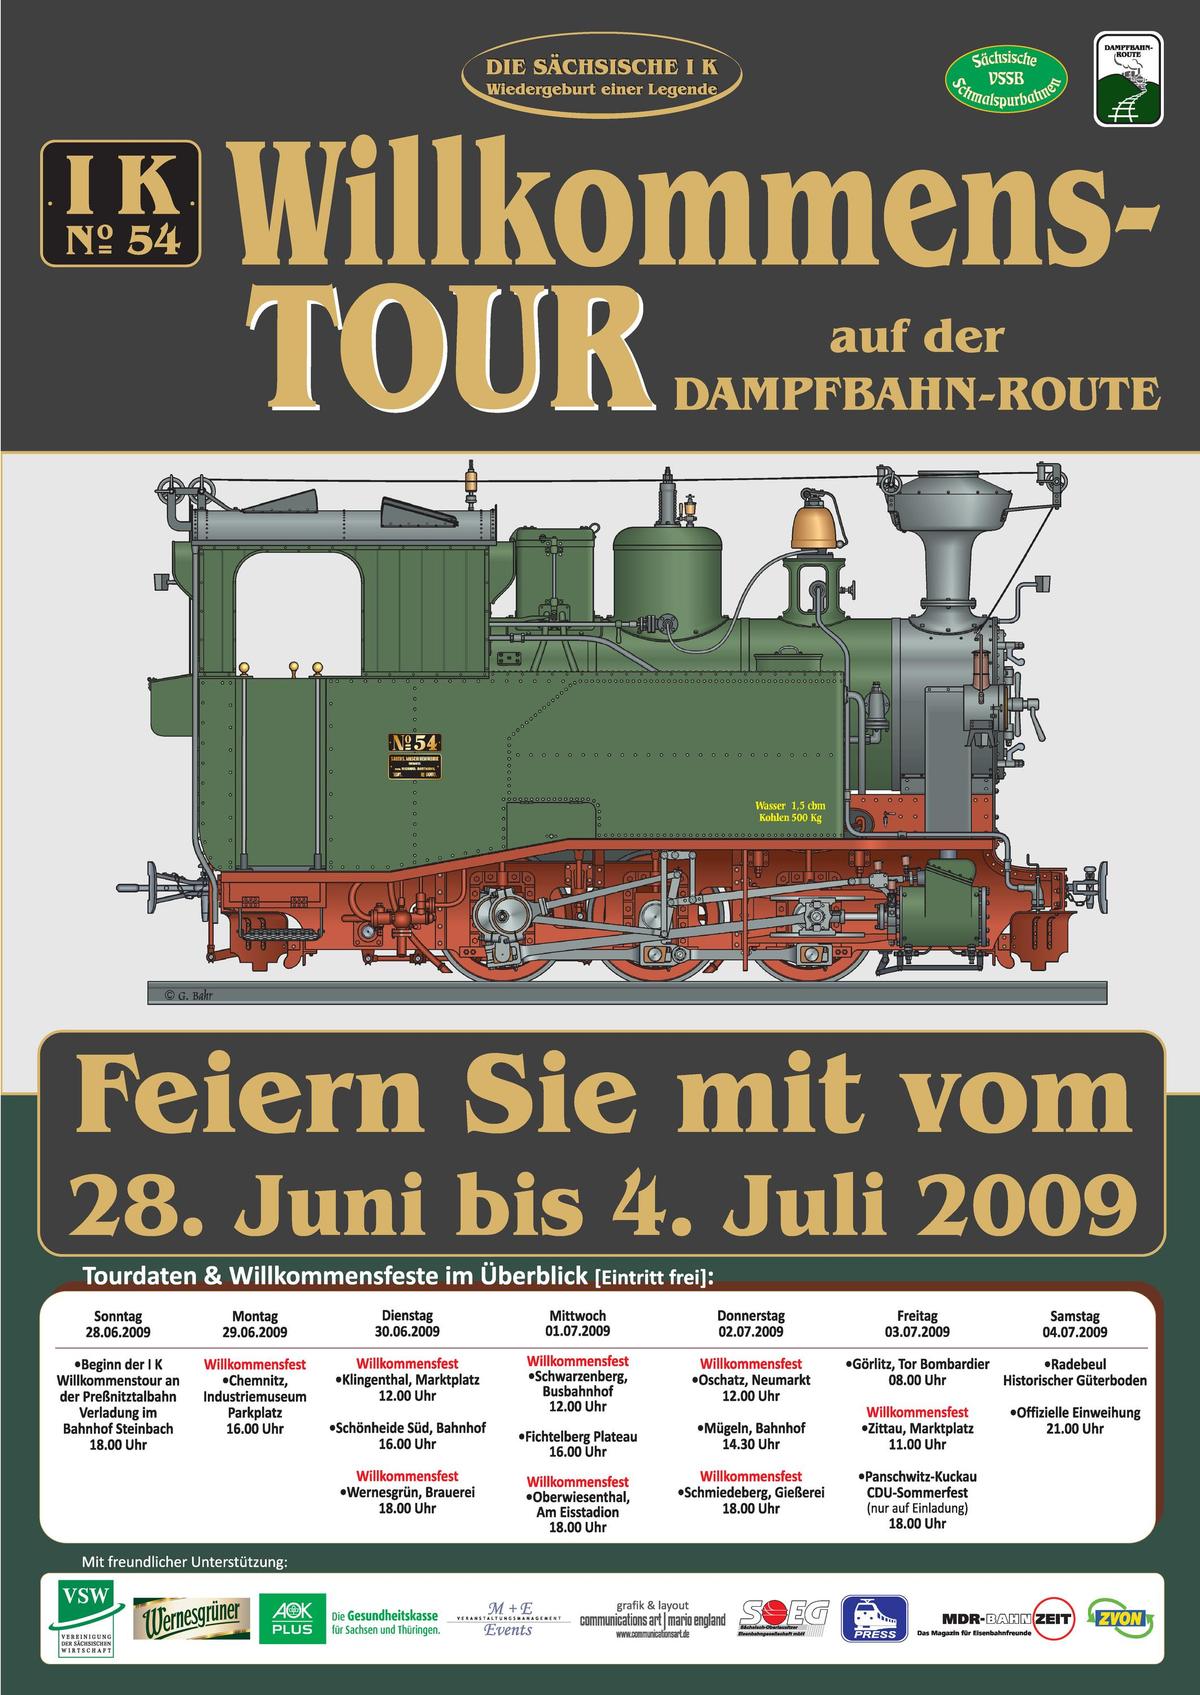 Die Tourdaten der Willkommenstour auf einem Blick. Start ist am Sonntag, 28. Juni um 18 Uhr in Steinbach bei der Preßnitztalbahn.